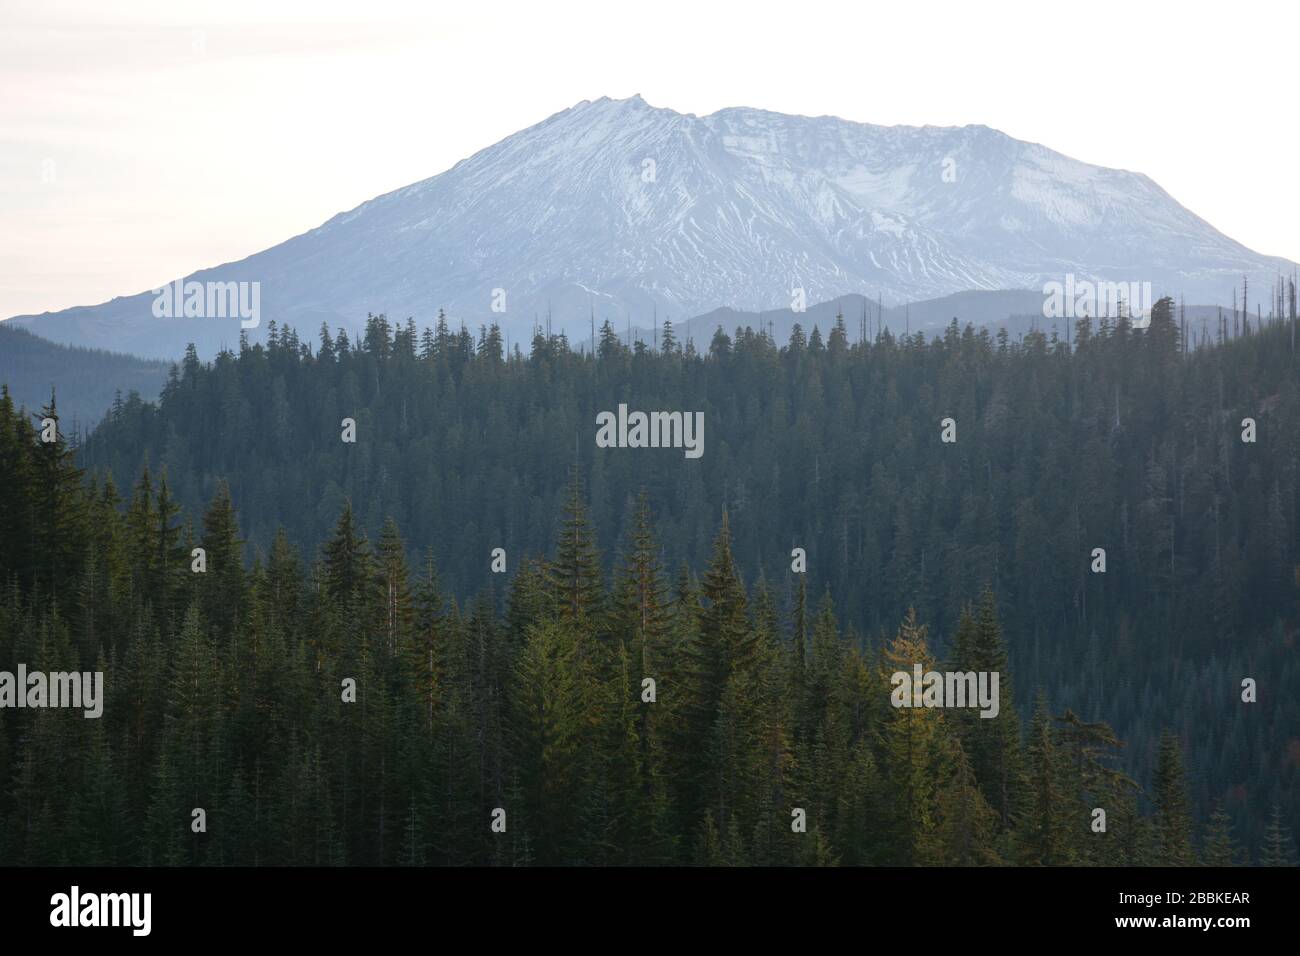 El lado este del Monte St Helens visto desde detrás de las montañas boscosas en el Bosque Nacional Gifford Pinchot, en el estado de Washington, EE.UU. Foto de stock